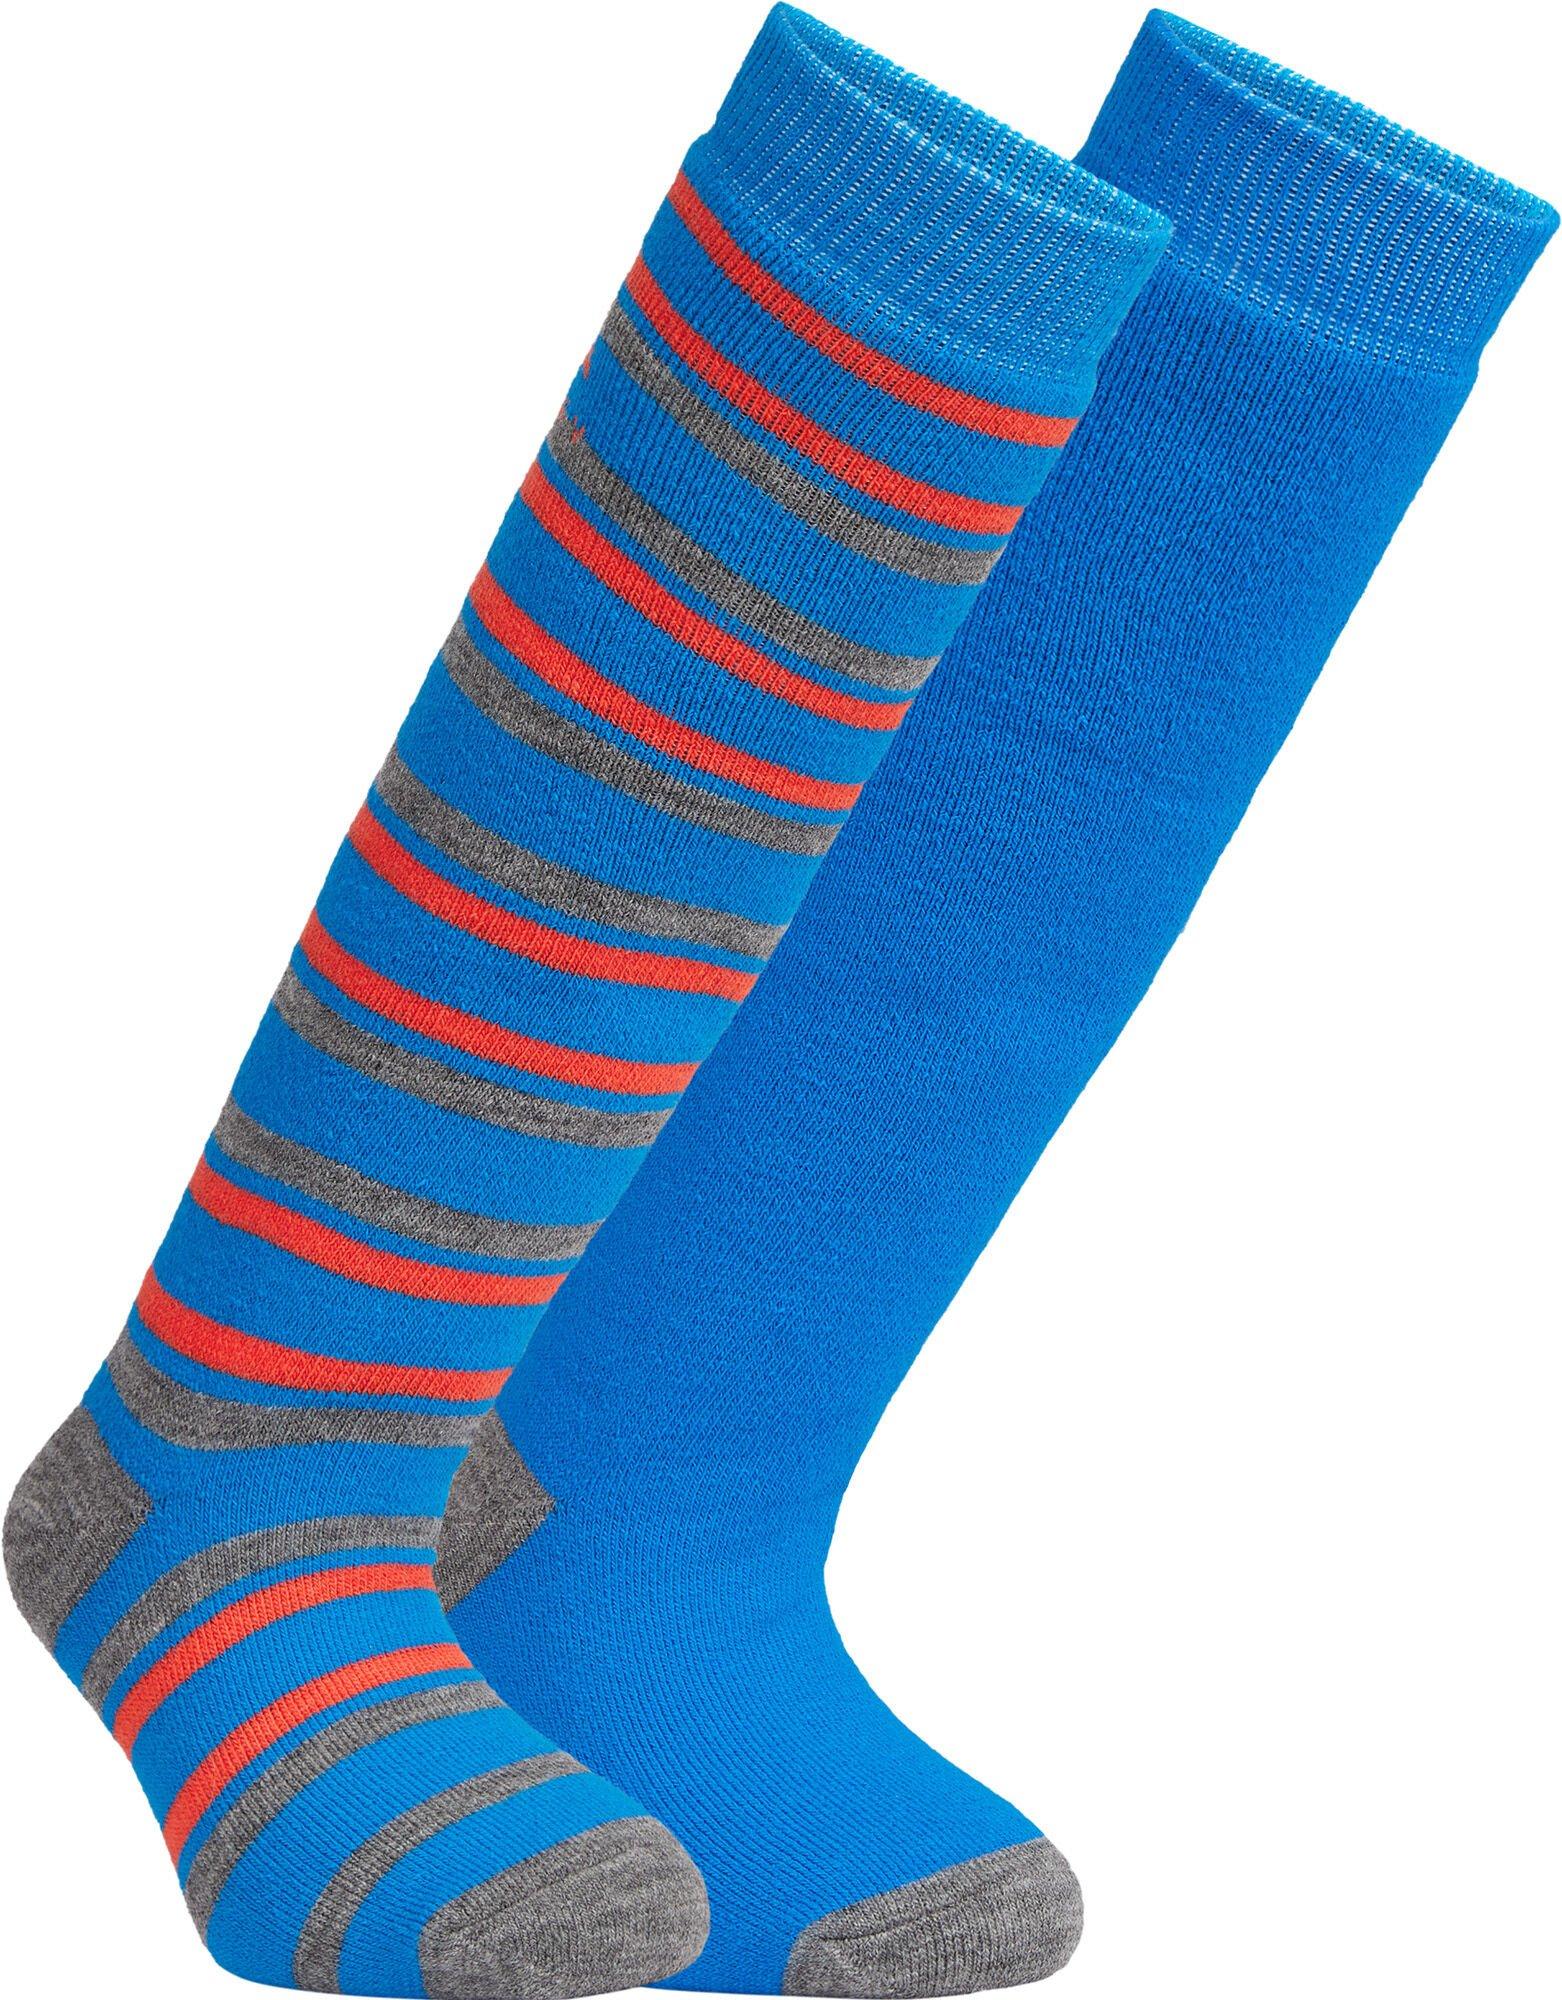 Ponožky MCKINLEY RIGO JR. Veľkosť: 27-30 EUR